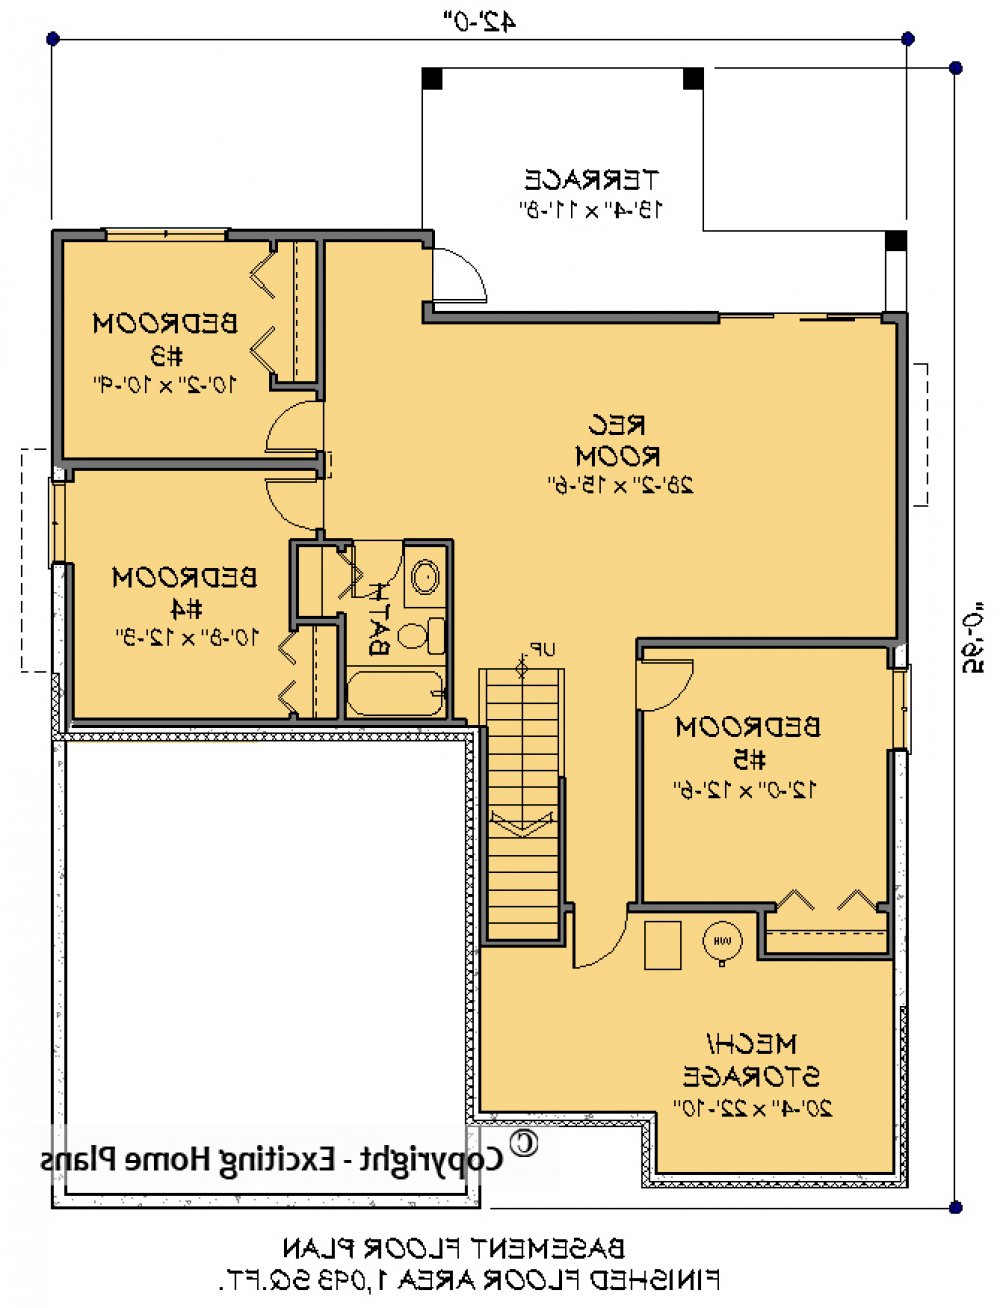 House Plan E1589-10 Lower Floor Plan REVERSE